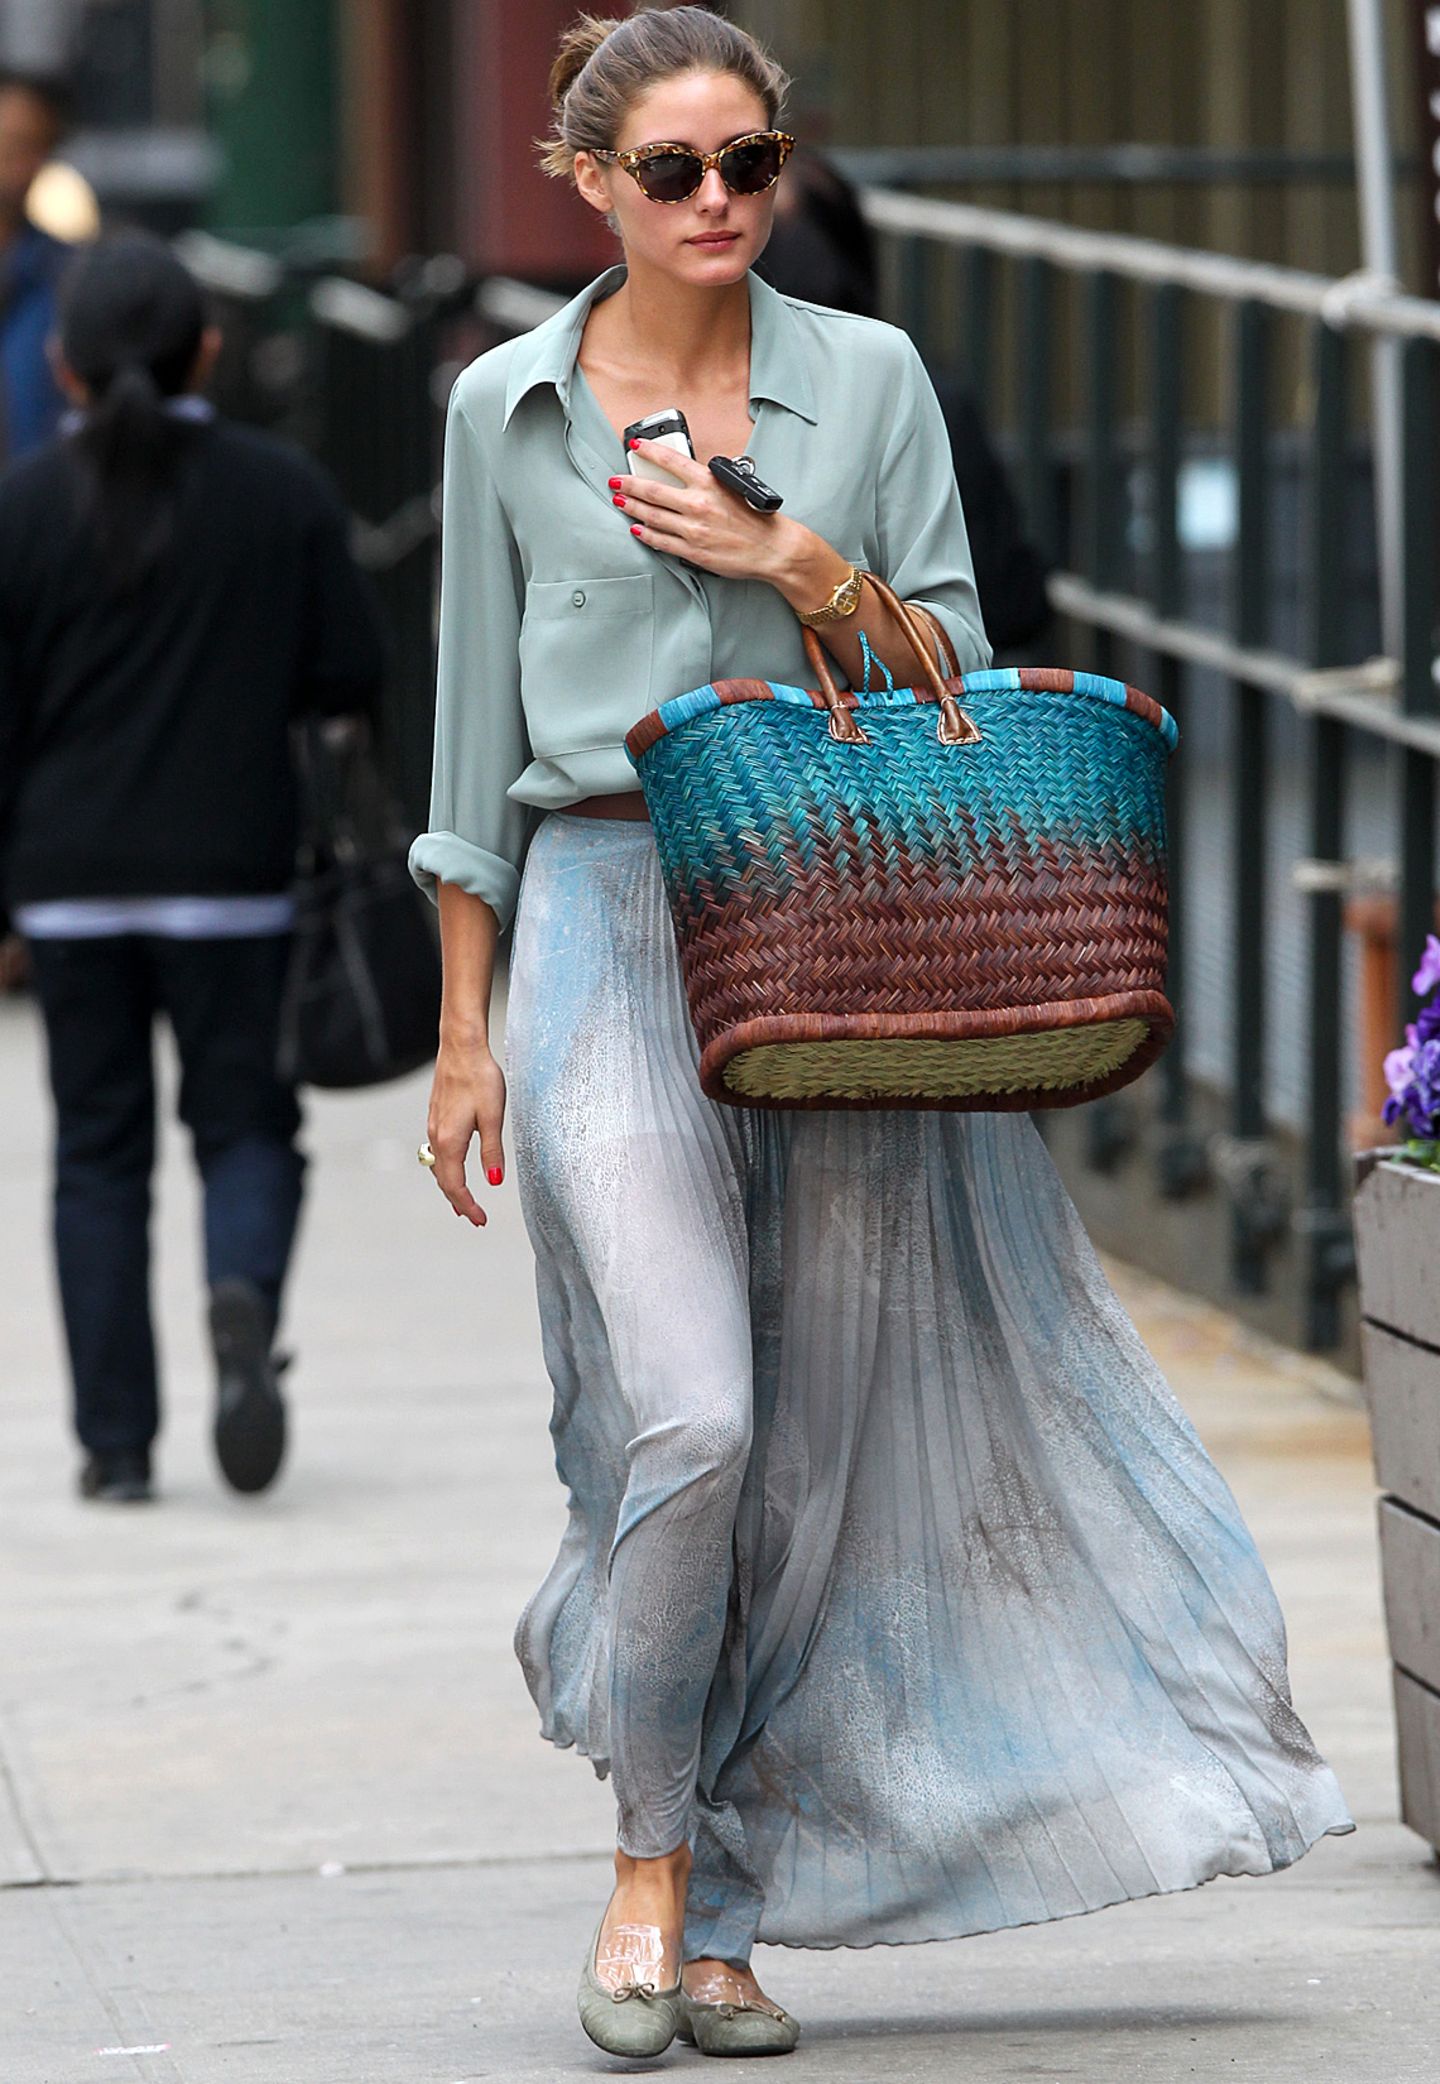 Selbst ein Einkaufsbummel kommt bei Olivia Palermo einem Gang über den Catwalk gleich. Den grau-blauen Plissee-Rock von Topshop kombiniert sie zu einer locker geschnittenen Bluse und großen Korbtasche.